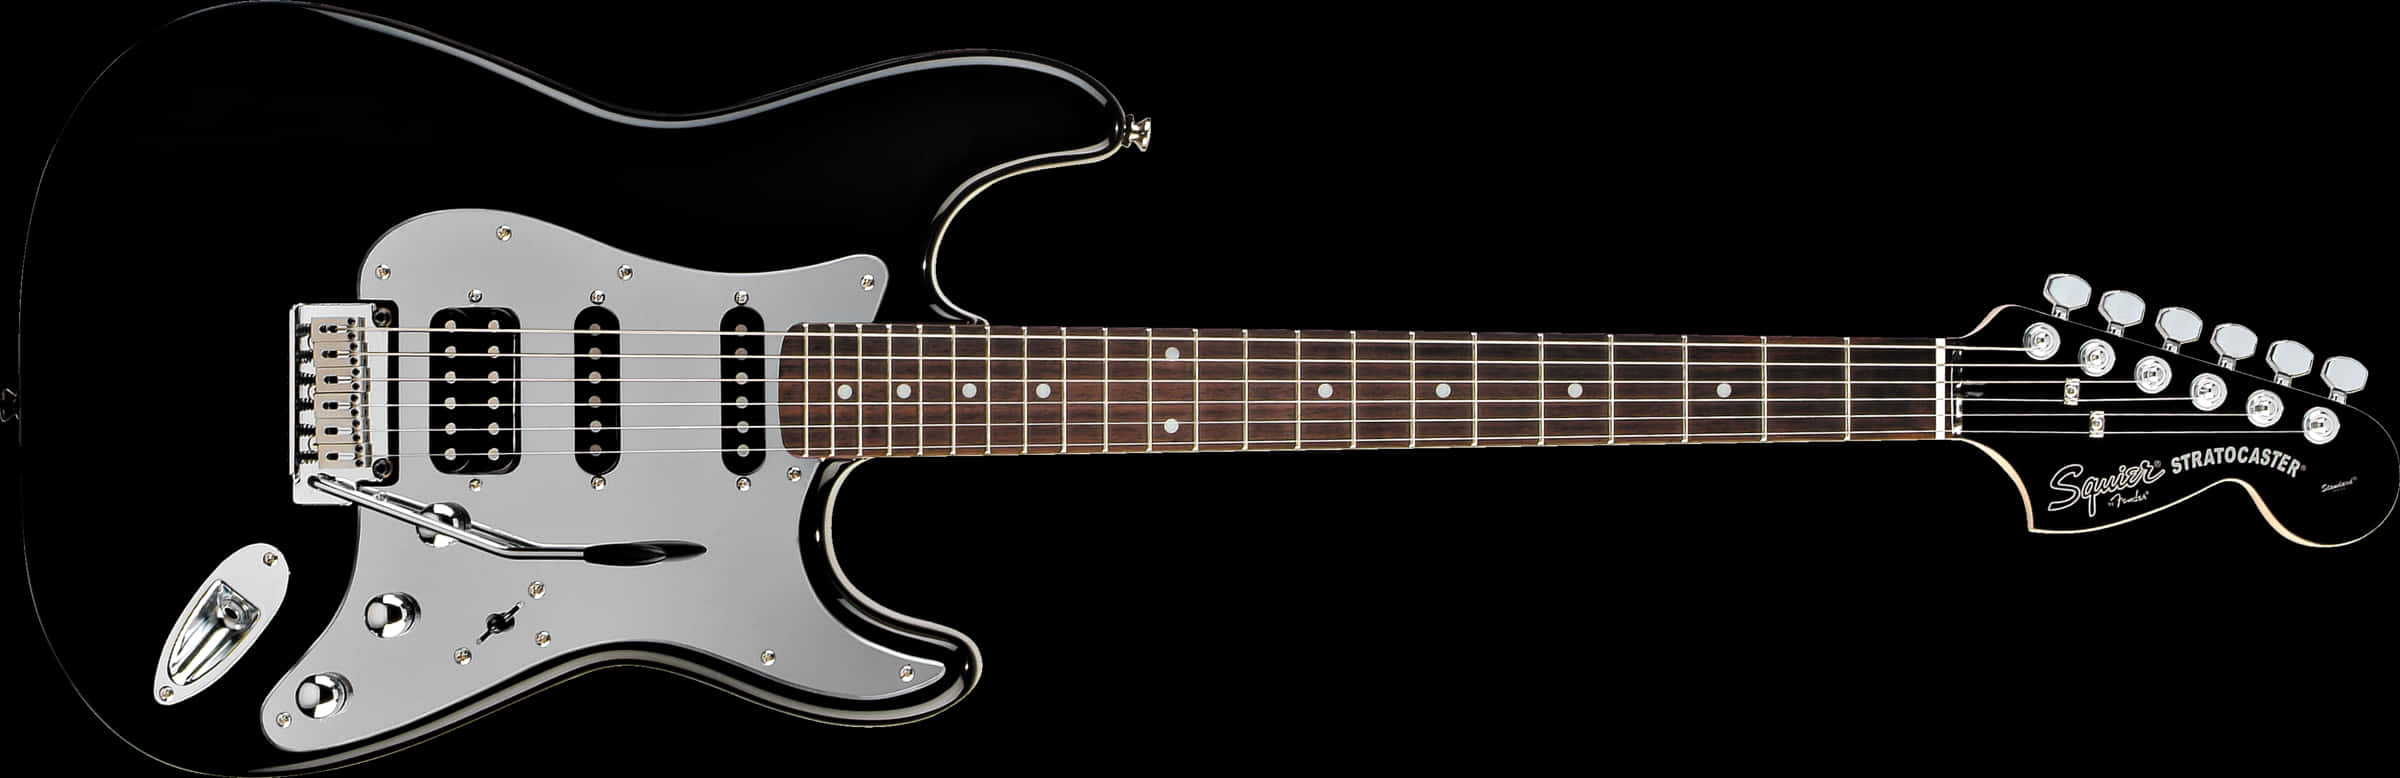 Black Fender Stratocaster Guitar PNG